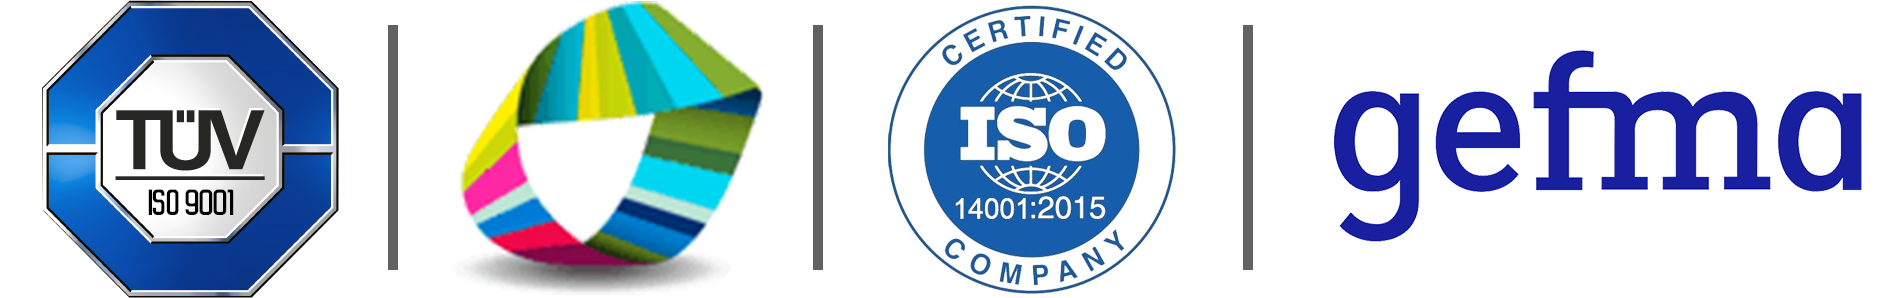 Facility Management Secotek zertifiziert nach ISO 9001 und ISO 14001